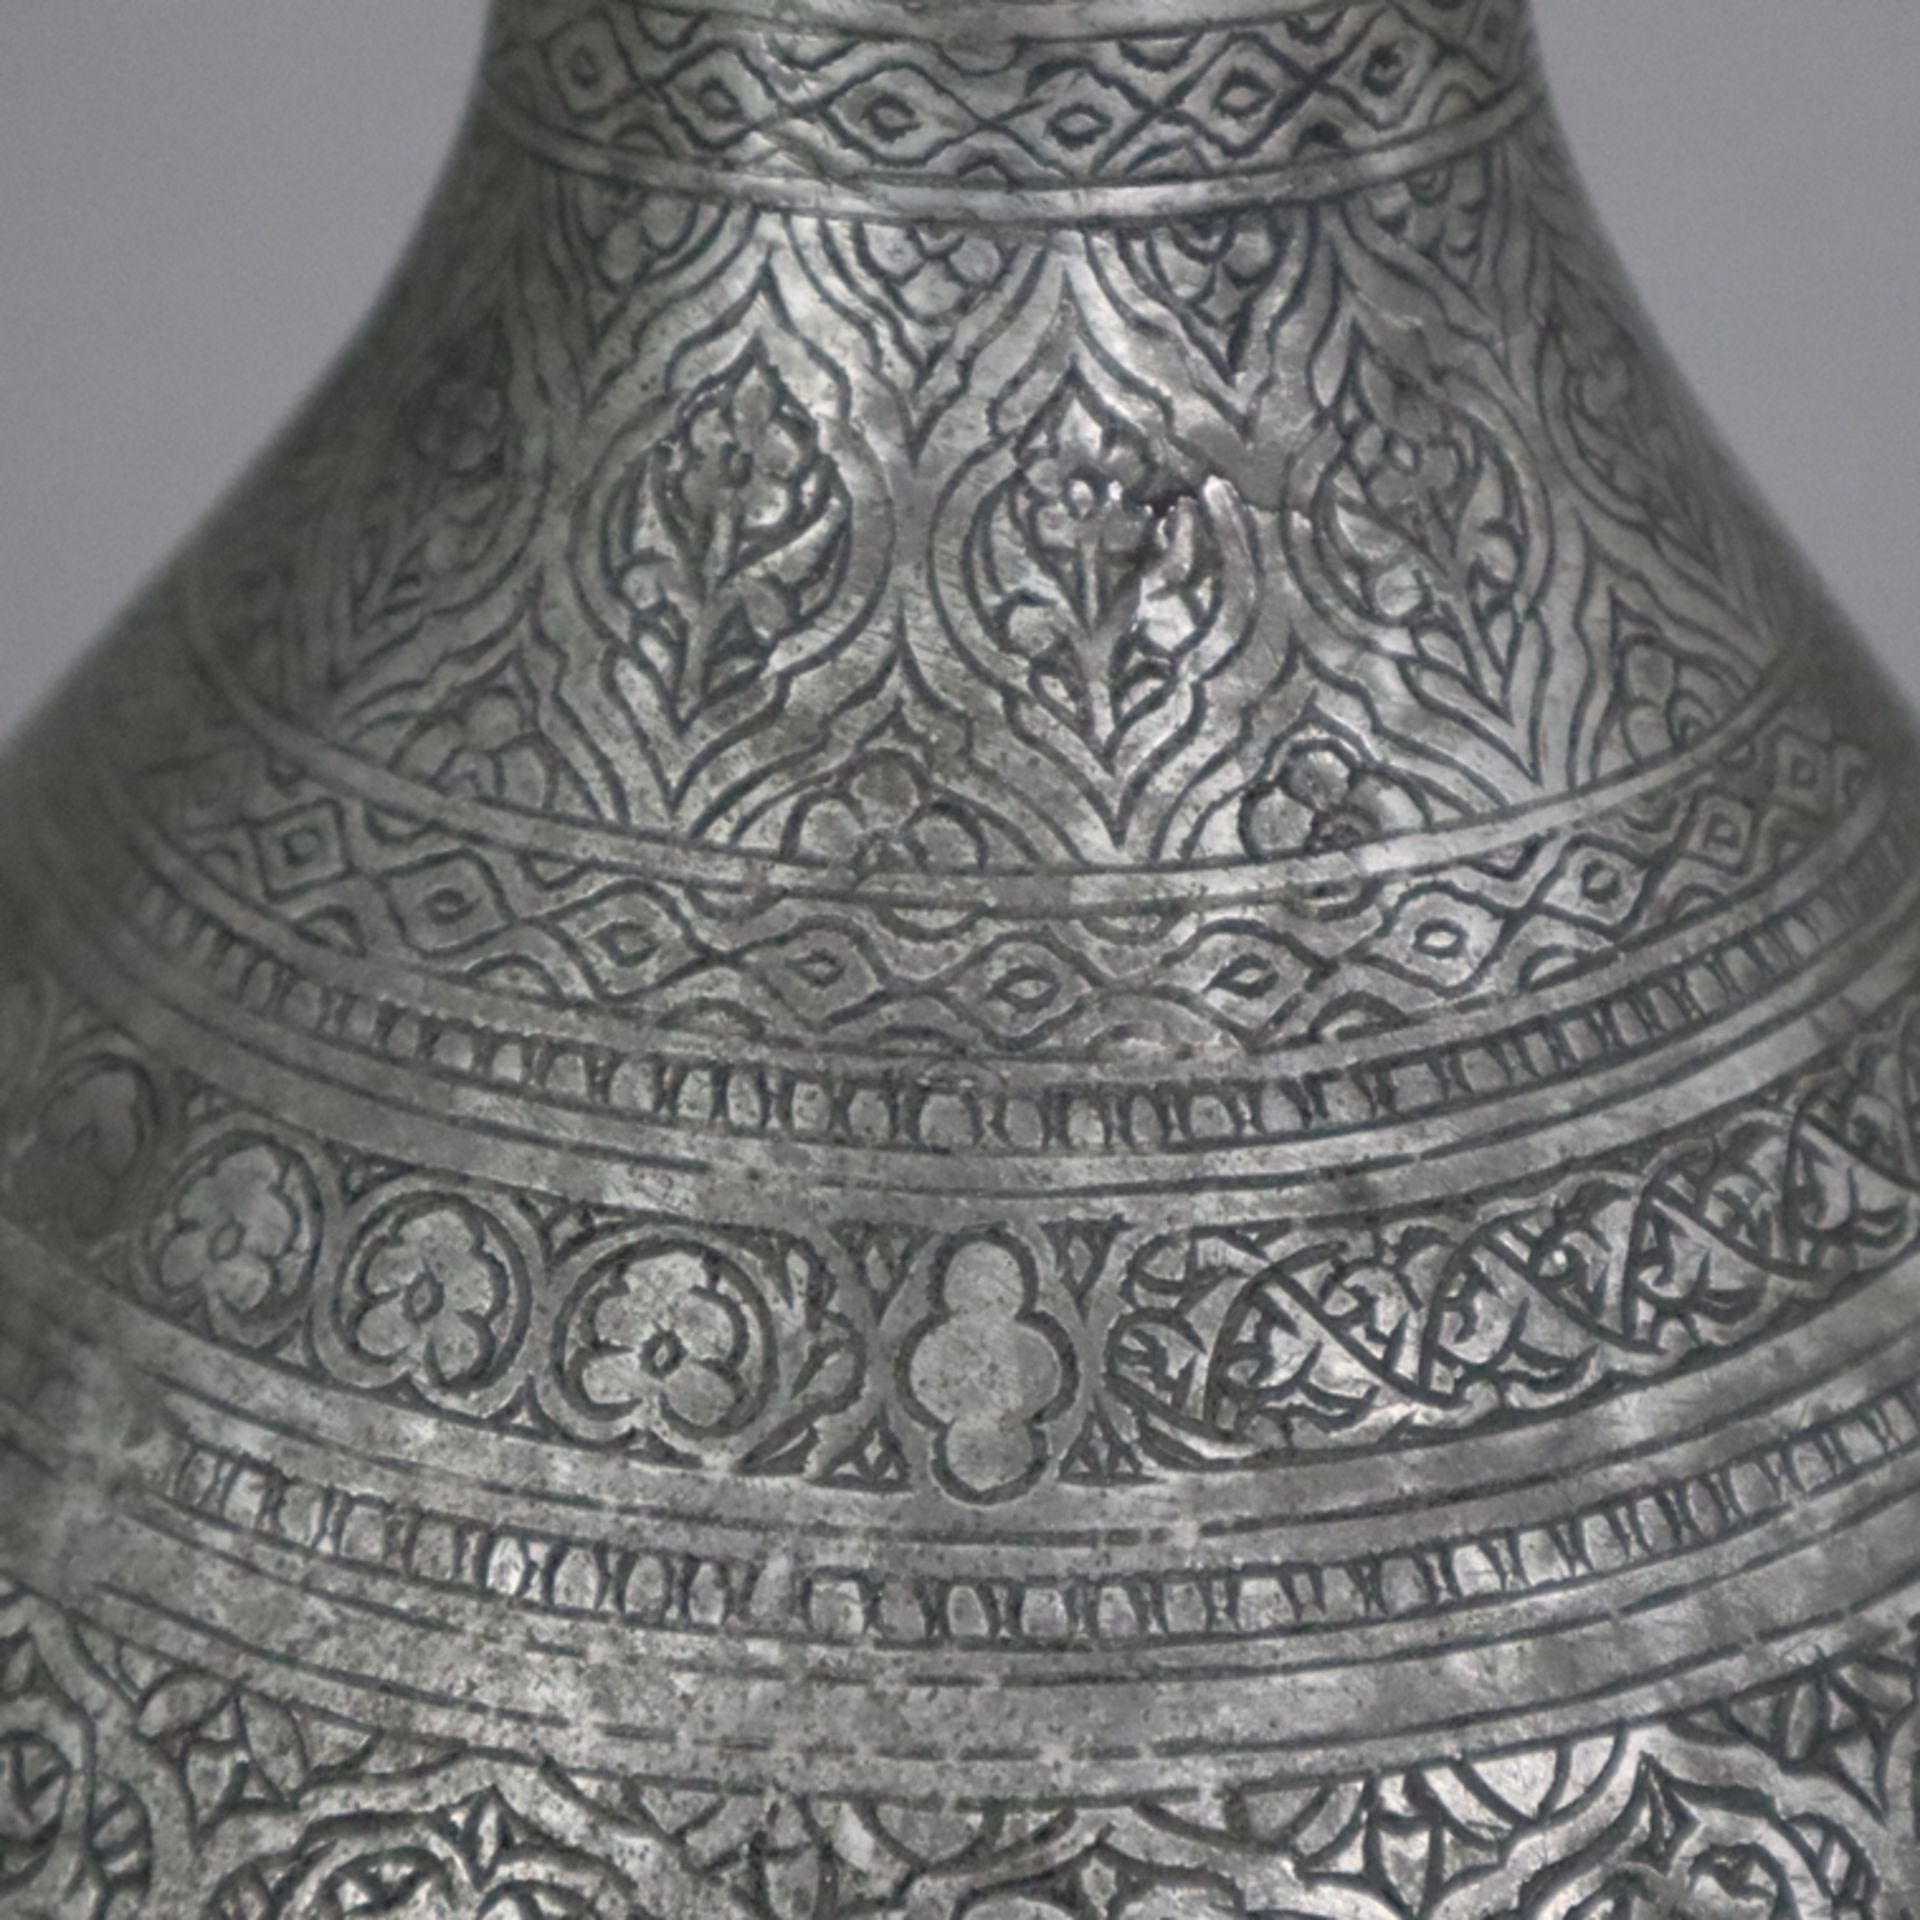 Vase - indopersisch, Kupfer versilbert / verzinnt?, birnförmige Vasenform am Hals durch Ringe gegli - Image 5 of 9